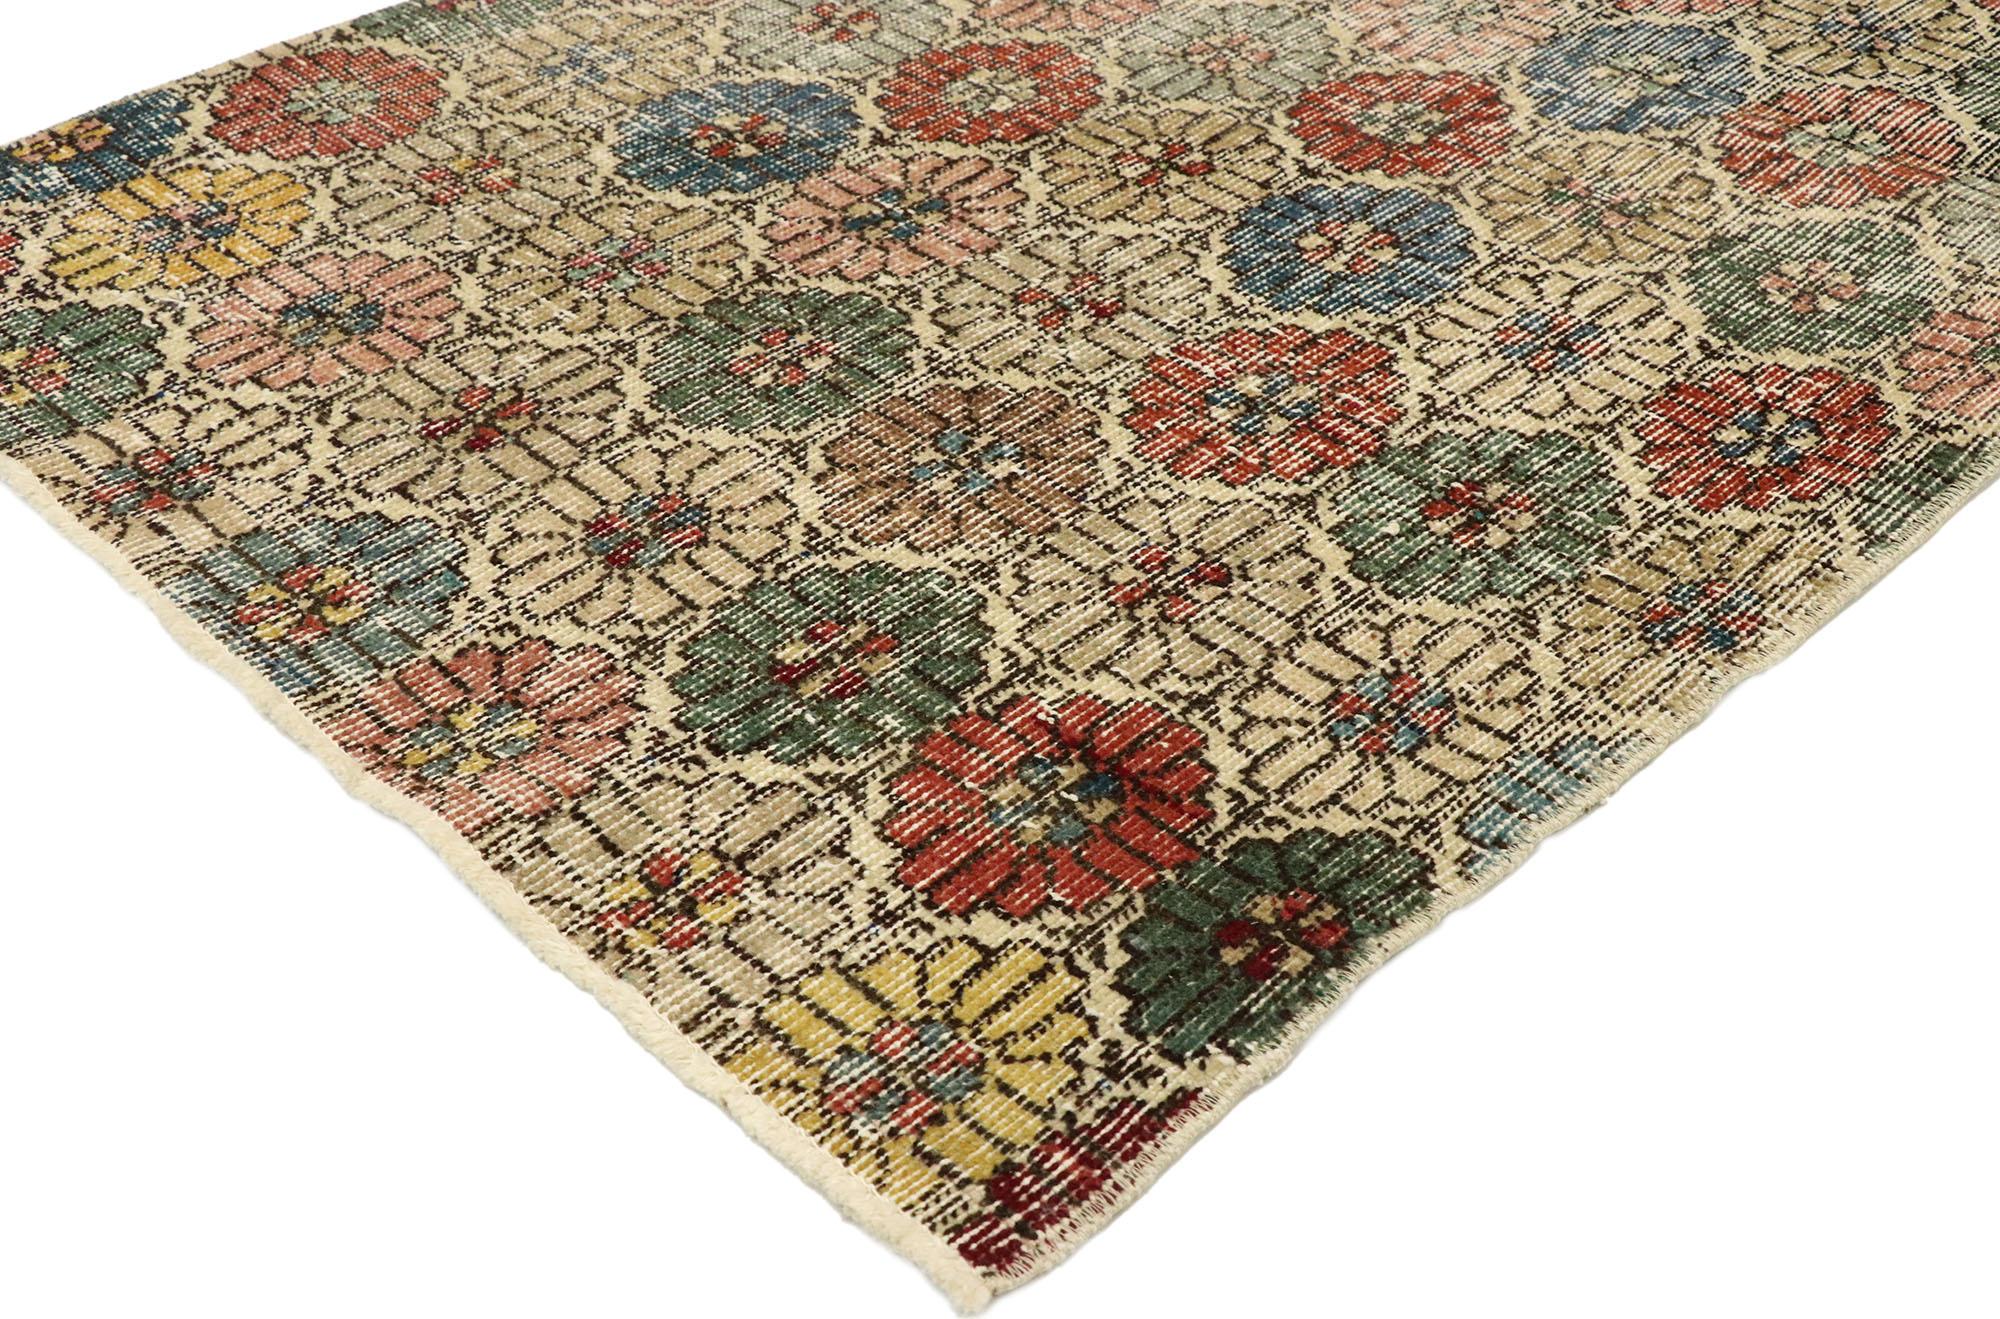 51898, gealterter türkischer Sivas-Akzentteppich im rustikalen englischen Traditional-Stil. Dieser handgeknüpfte türkische Sivas-Teppich aus Wolle, der sich durch seine schlichte Eleganz auszeichnet, verkörpert auf wunderbare Weise einen